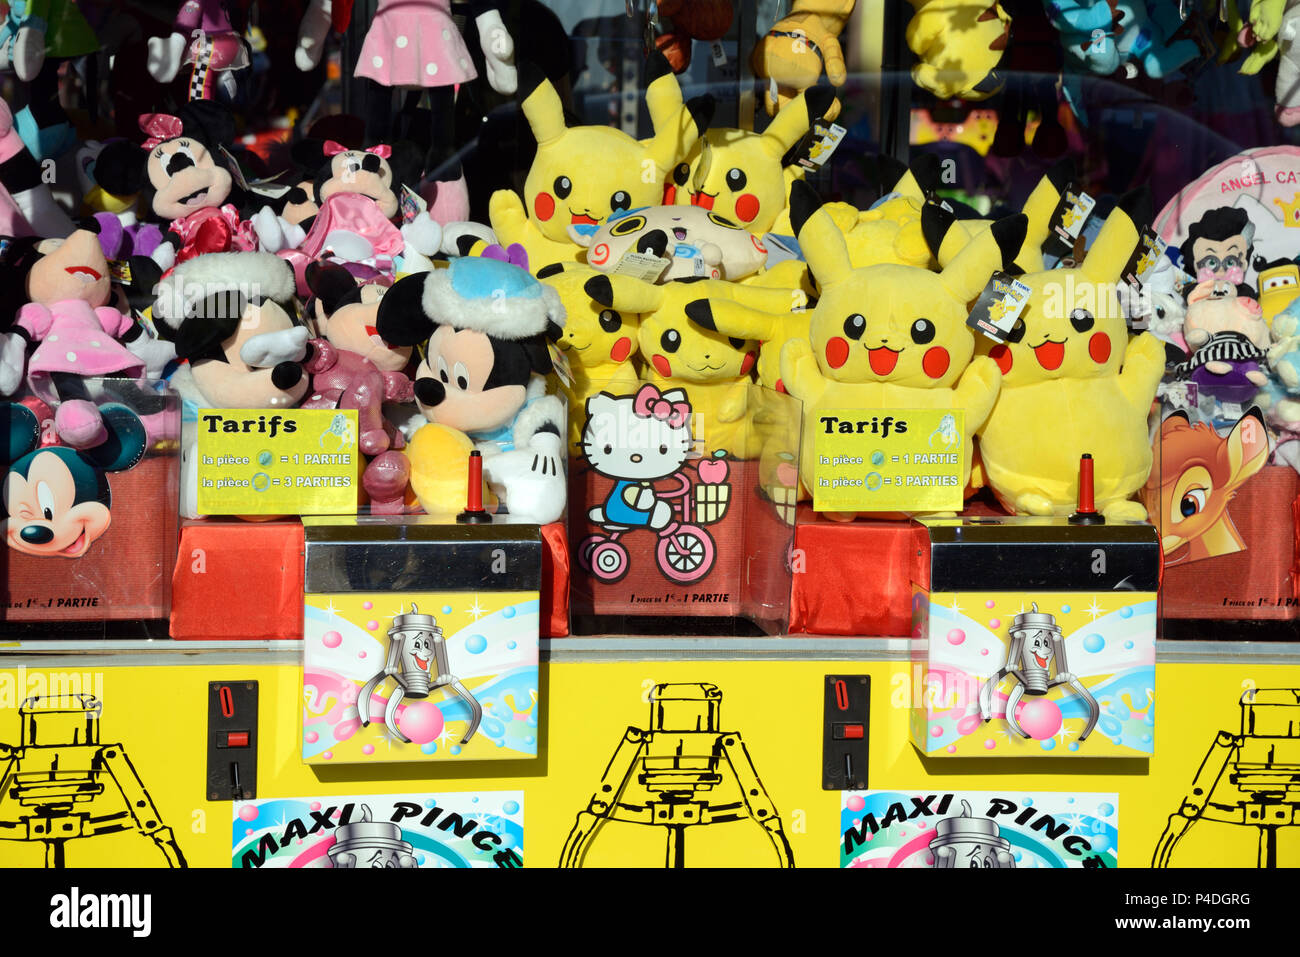 Pikachu de peluche, juguetes de Disney & Pokemon como Fun Fair premios en juego de descarga lateral viajando feria Foto de stock